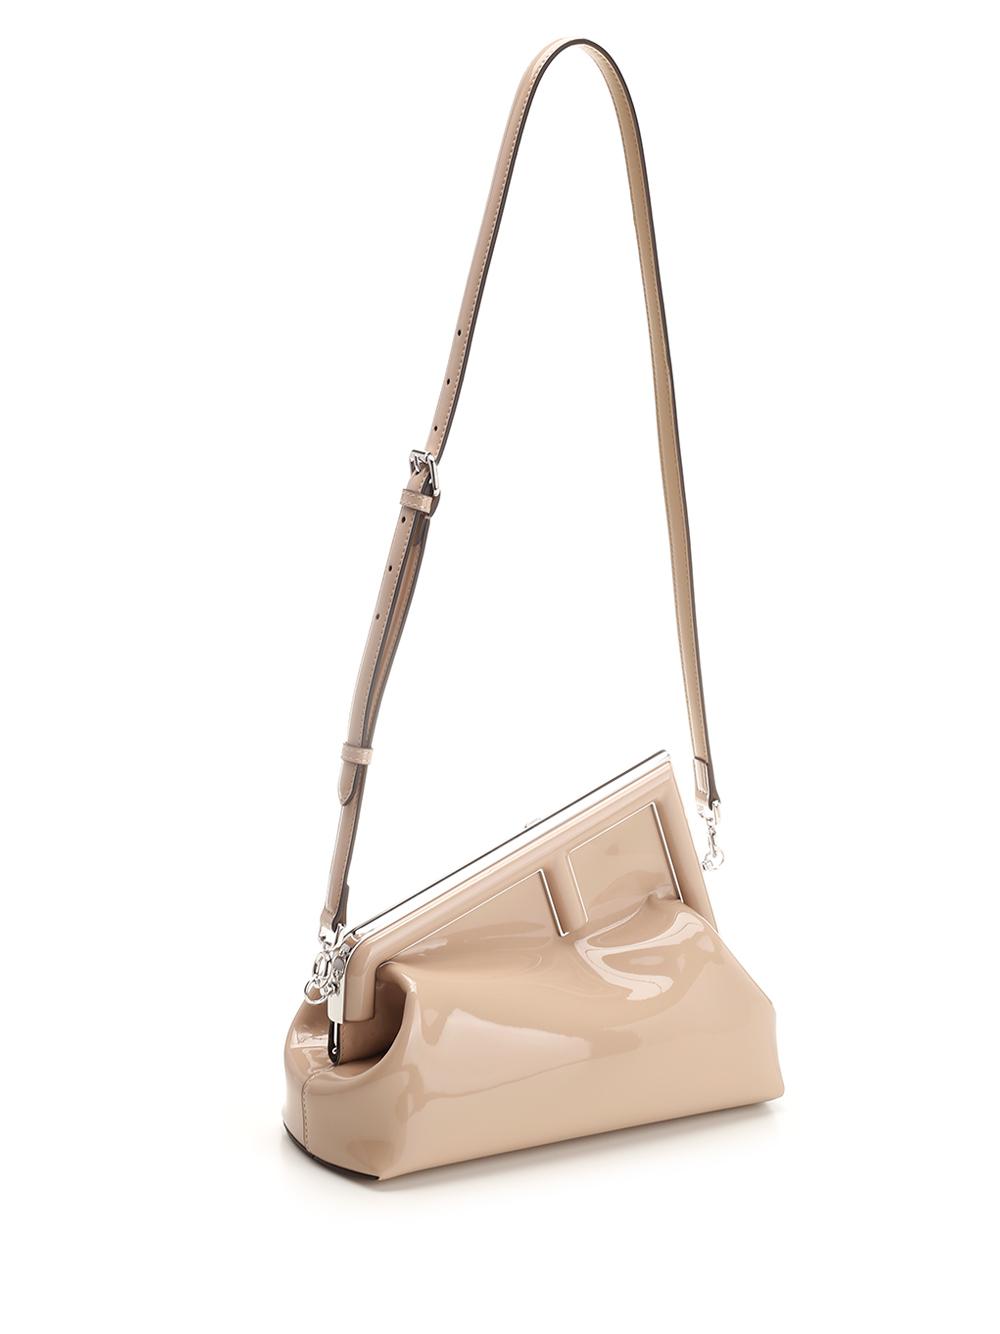 Fendi Handbags - Lampoo